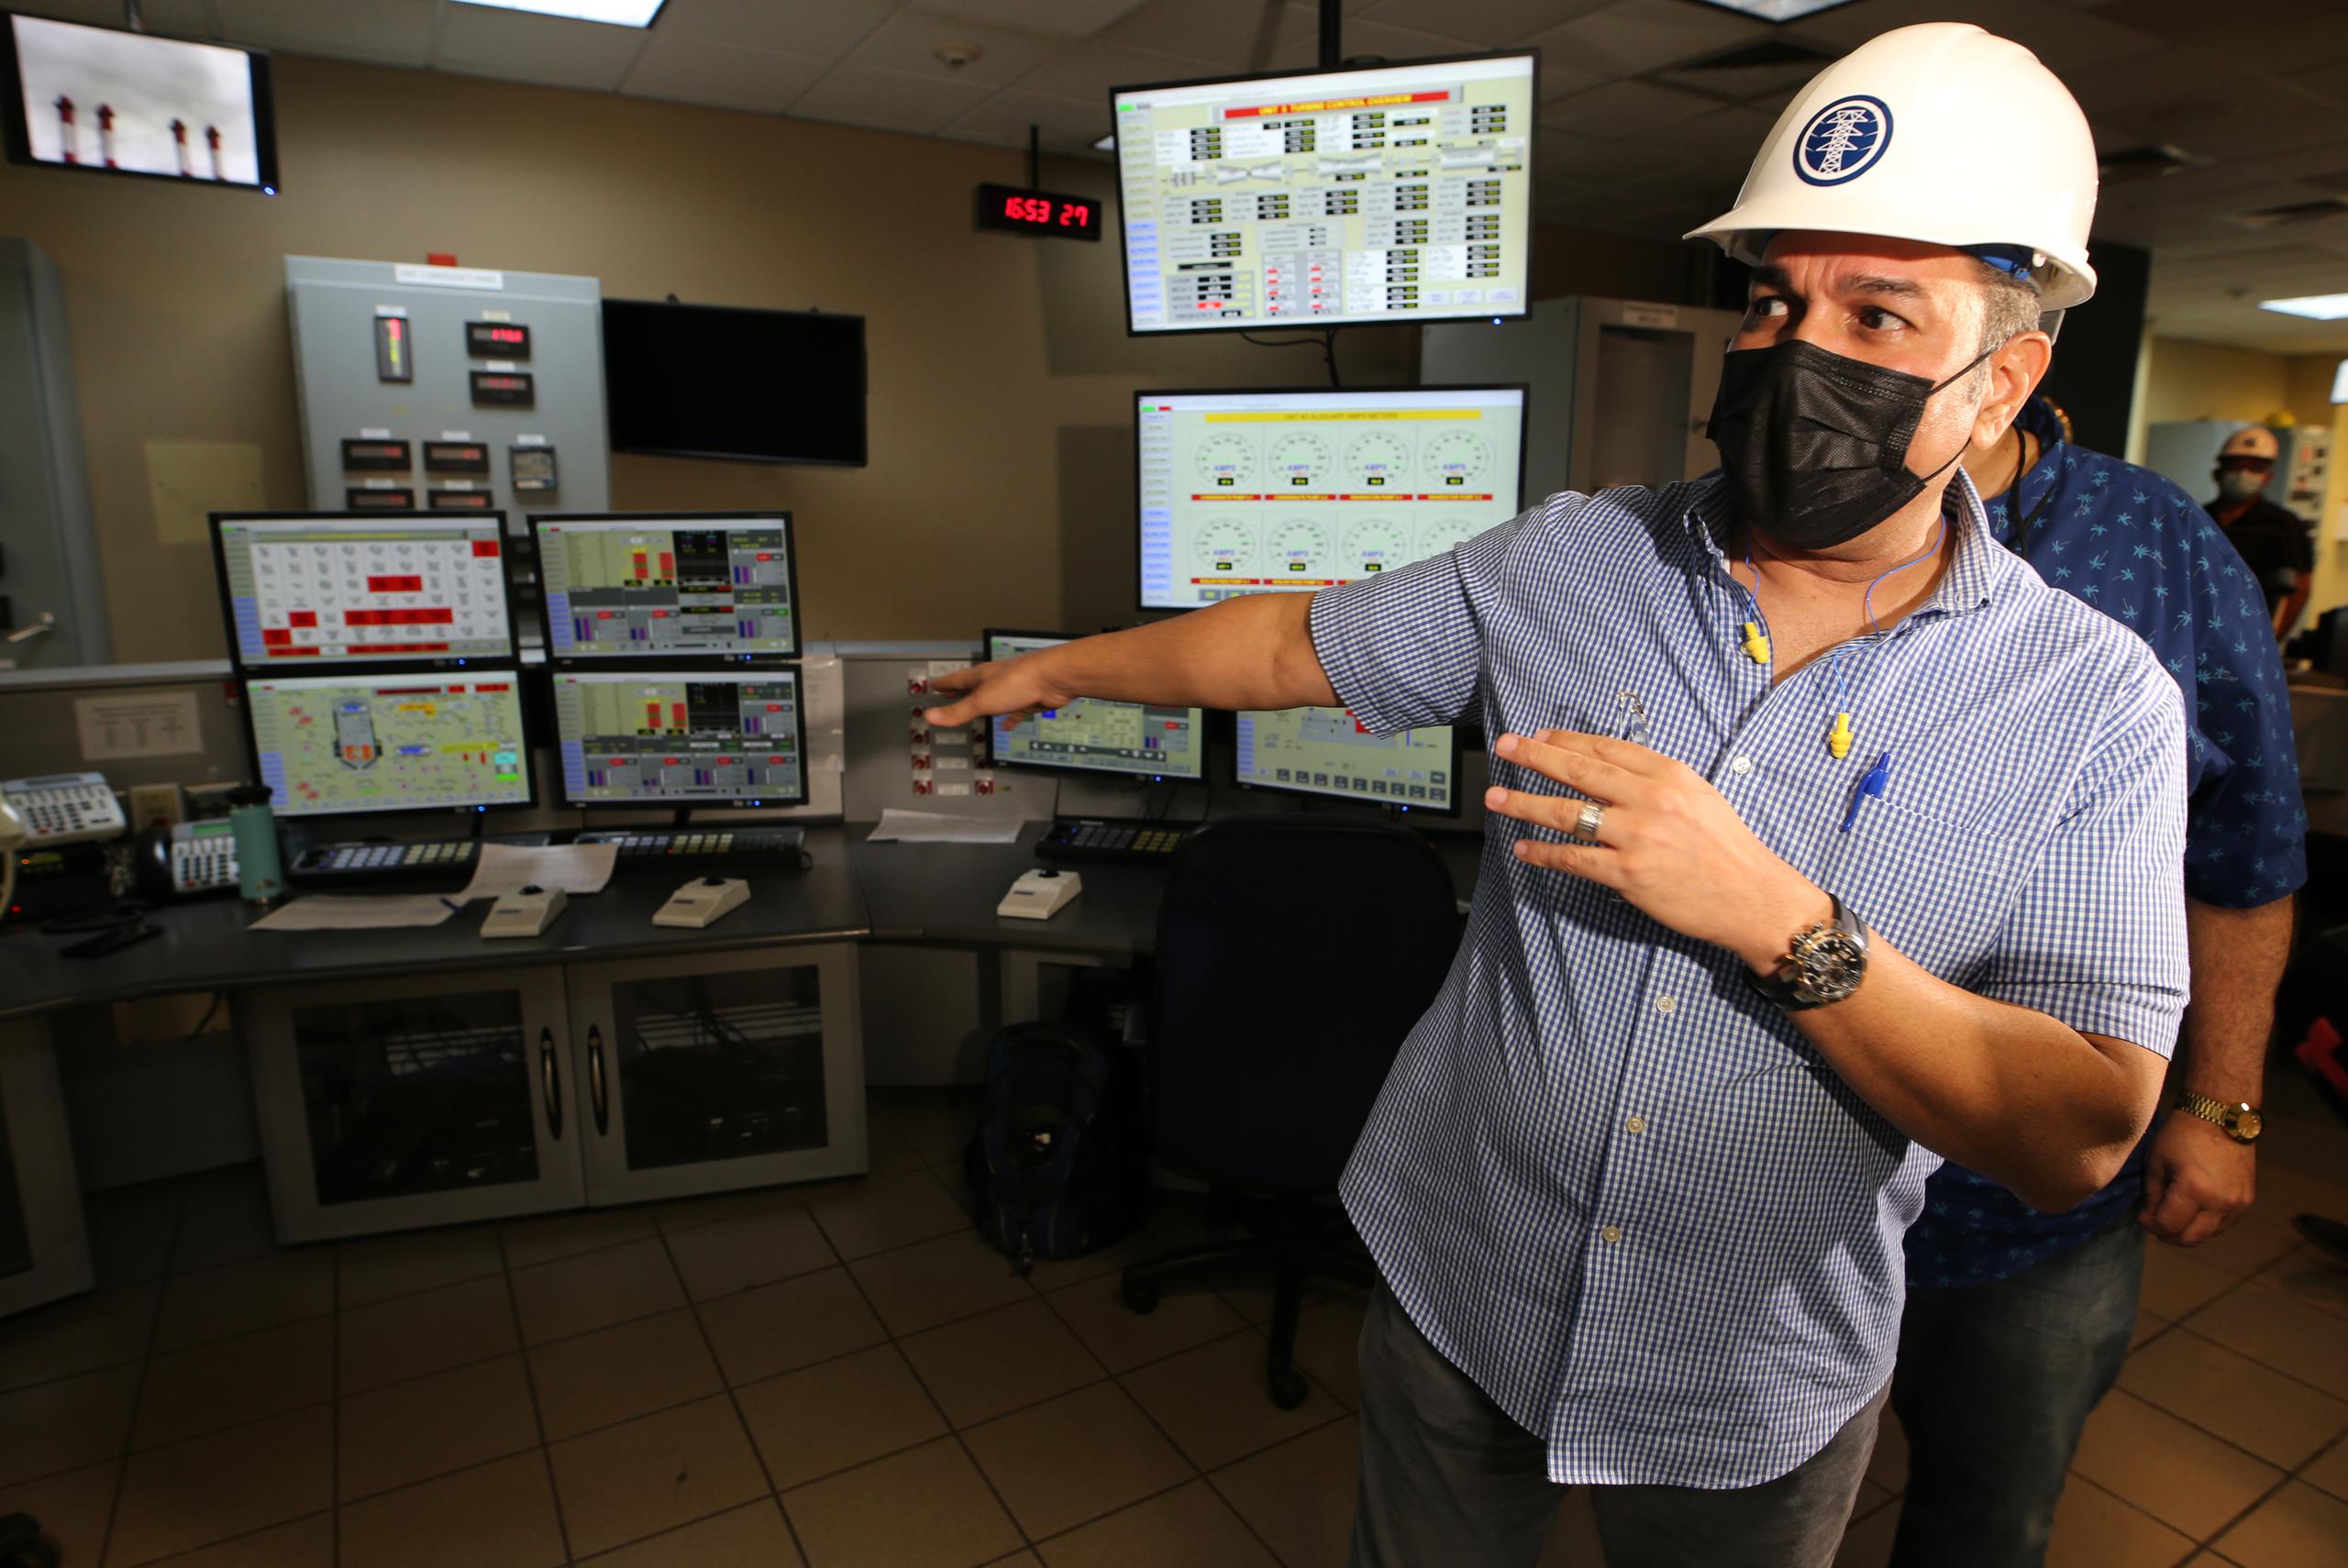 El director ejecutivo de la AEE, Josué Colón Ortiz, dijo que han tomado medidas para que durante los mantenimientos “haya suministro de energía” para los abonados.